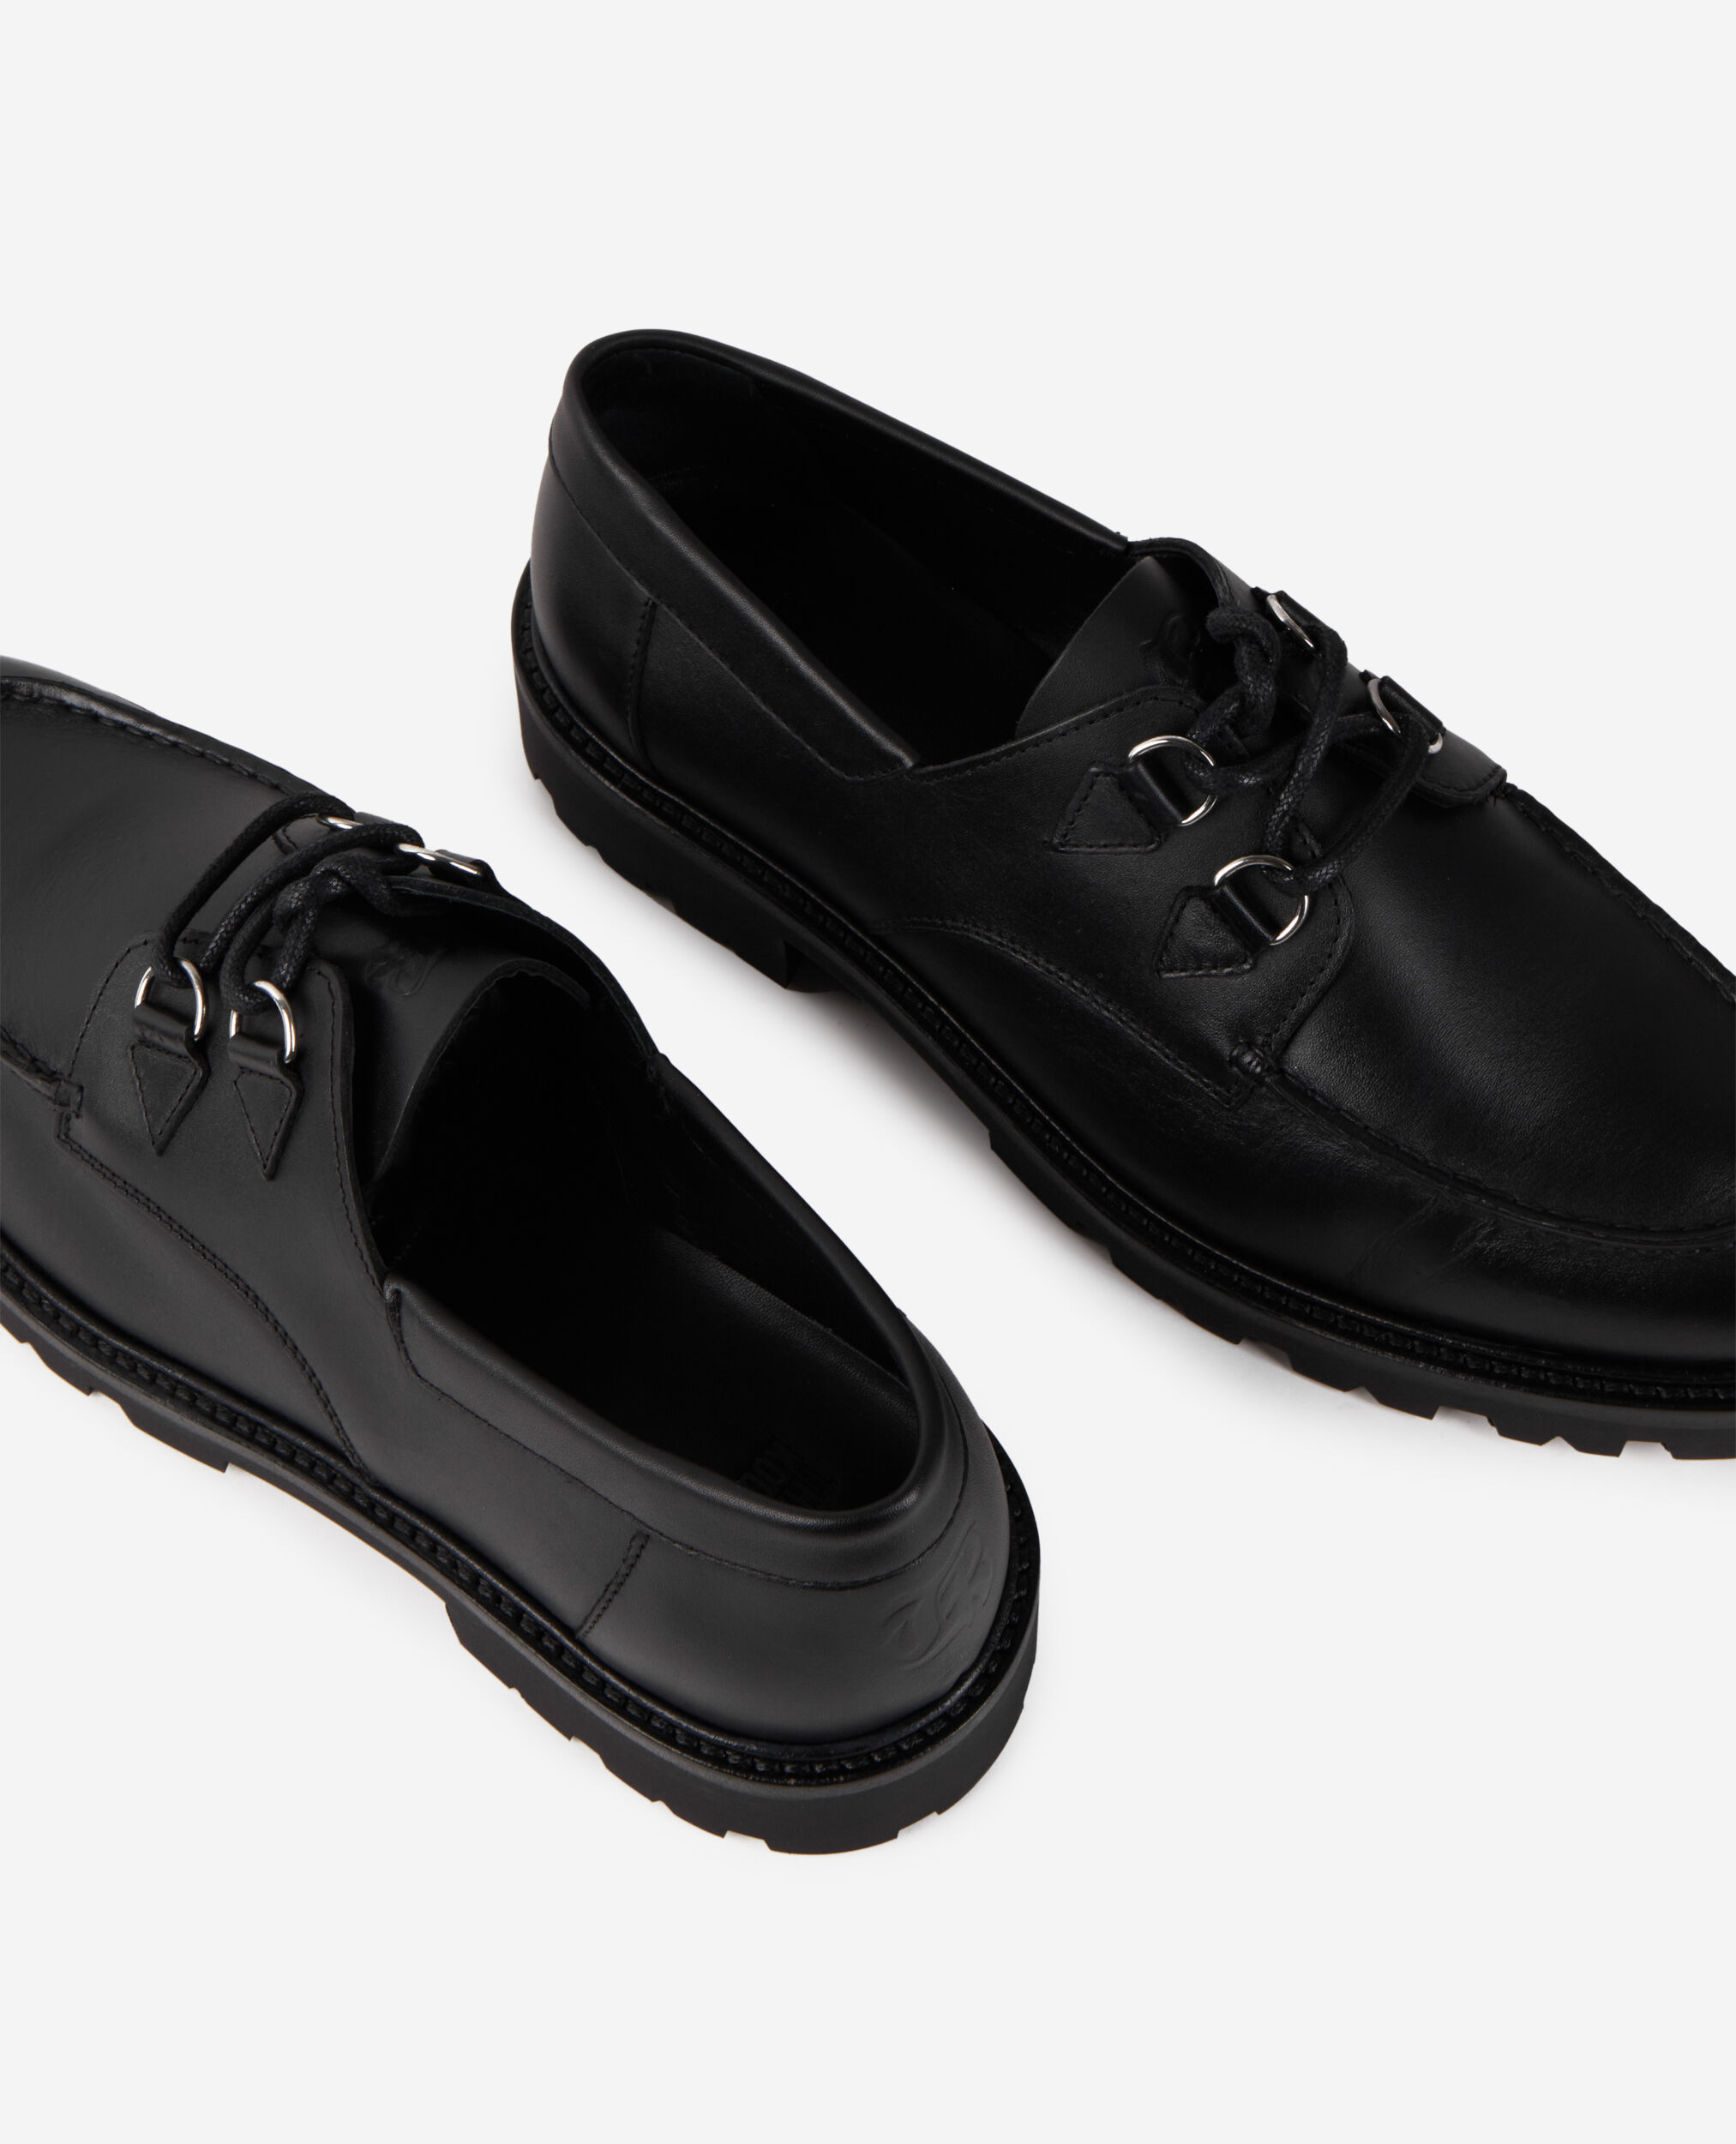 Zapatos derby piel negros cordones, BLACK, hi-res image number null